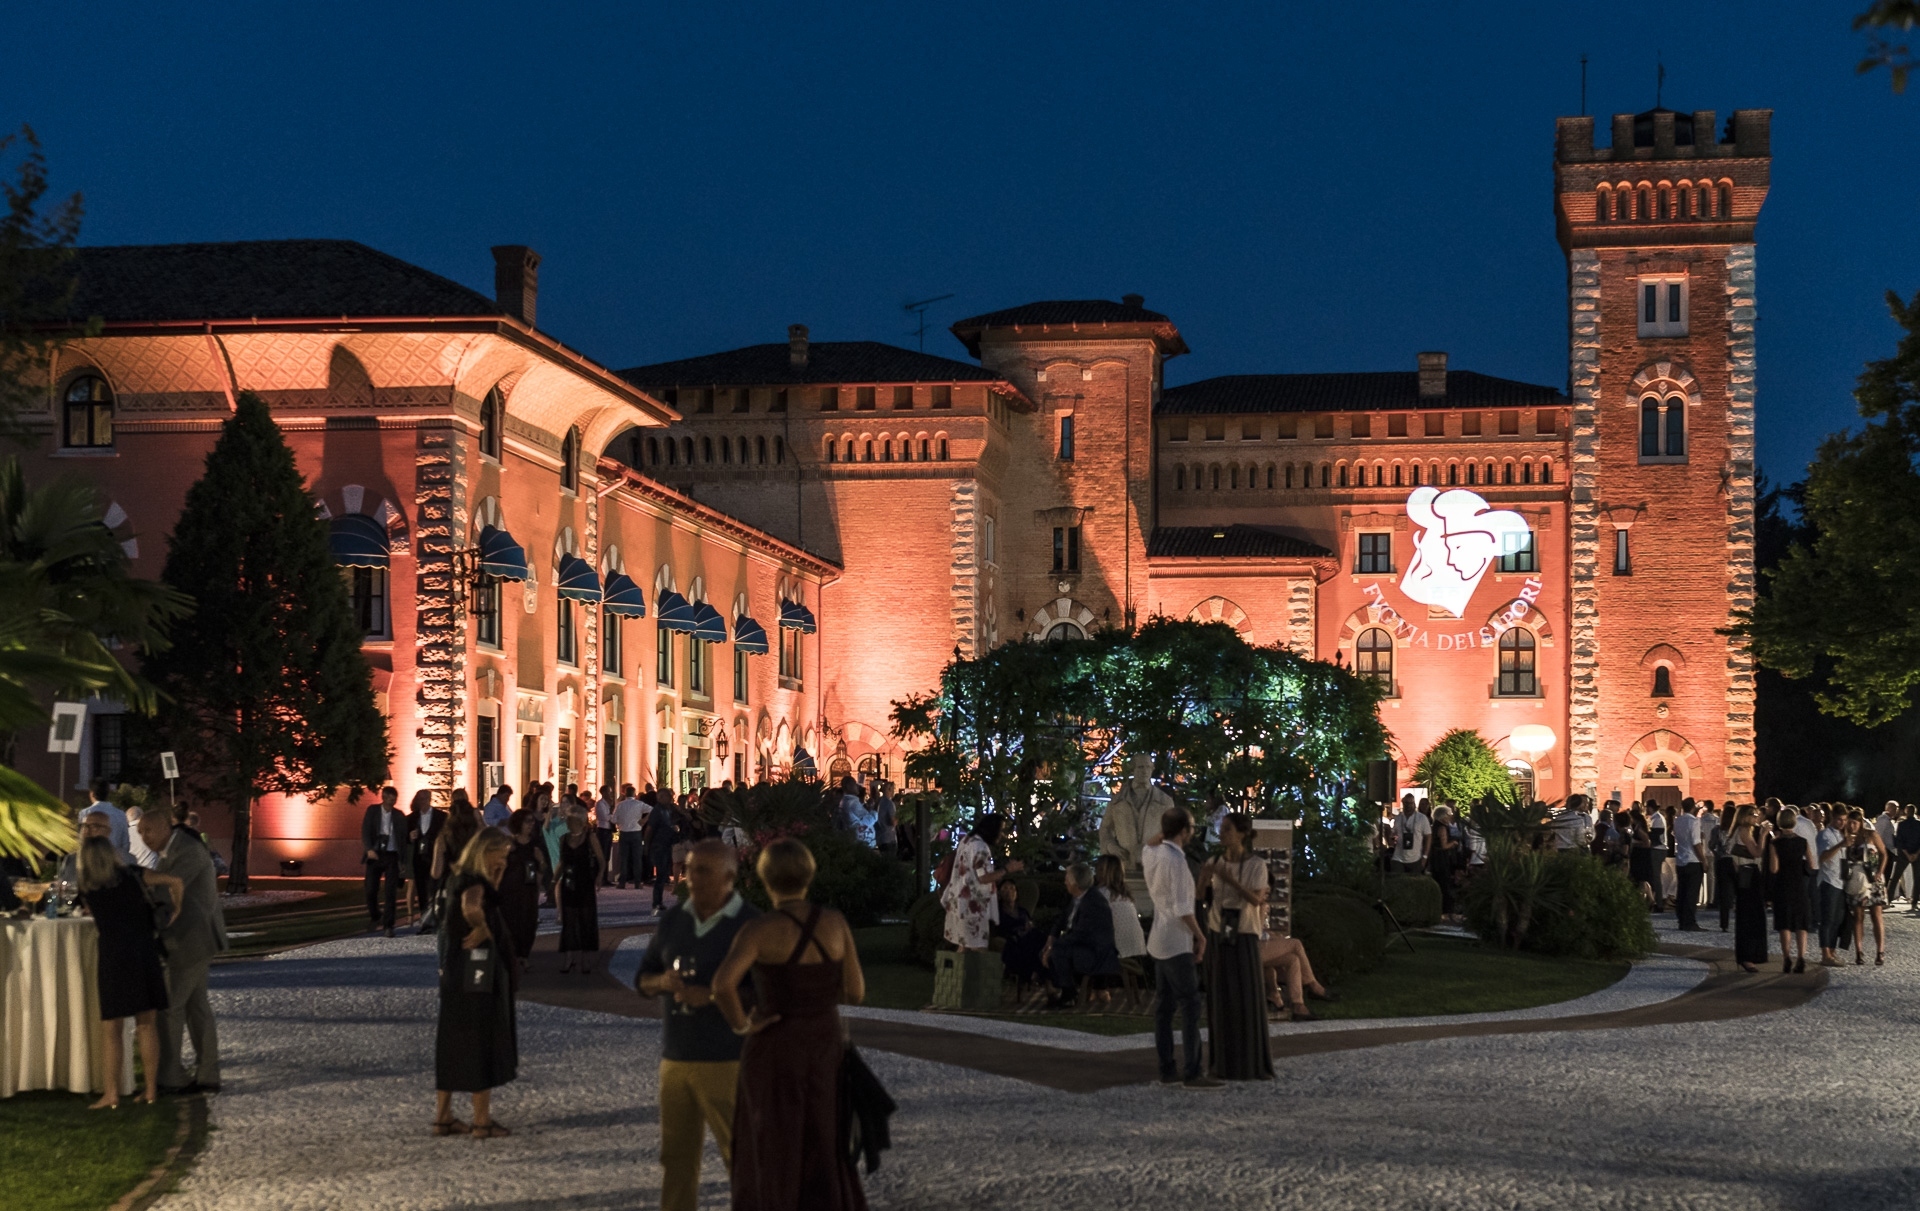 Cena spettacolo al Castello di Spessa di Capriva del Friuli eventi enogastronomici estate 2018